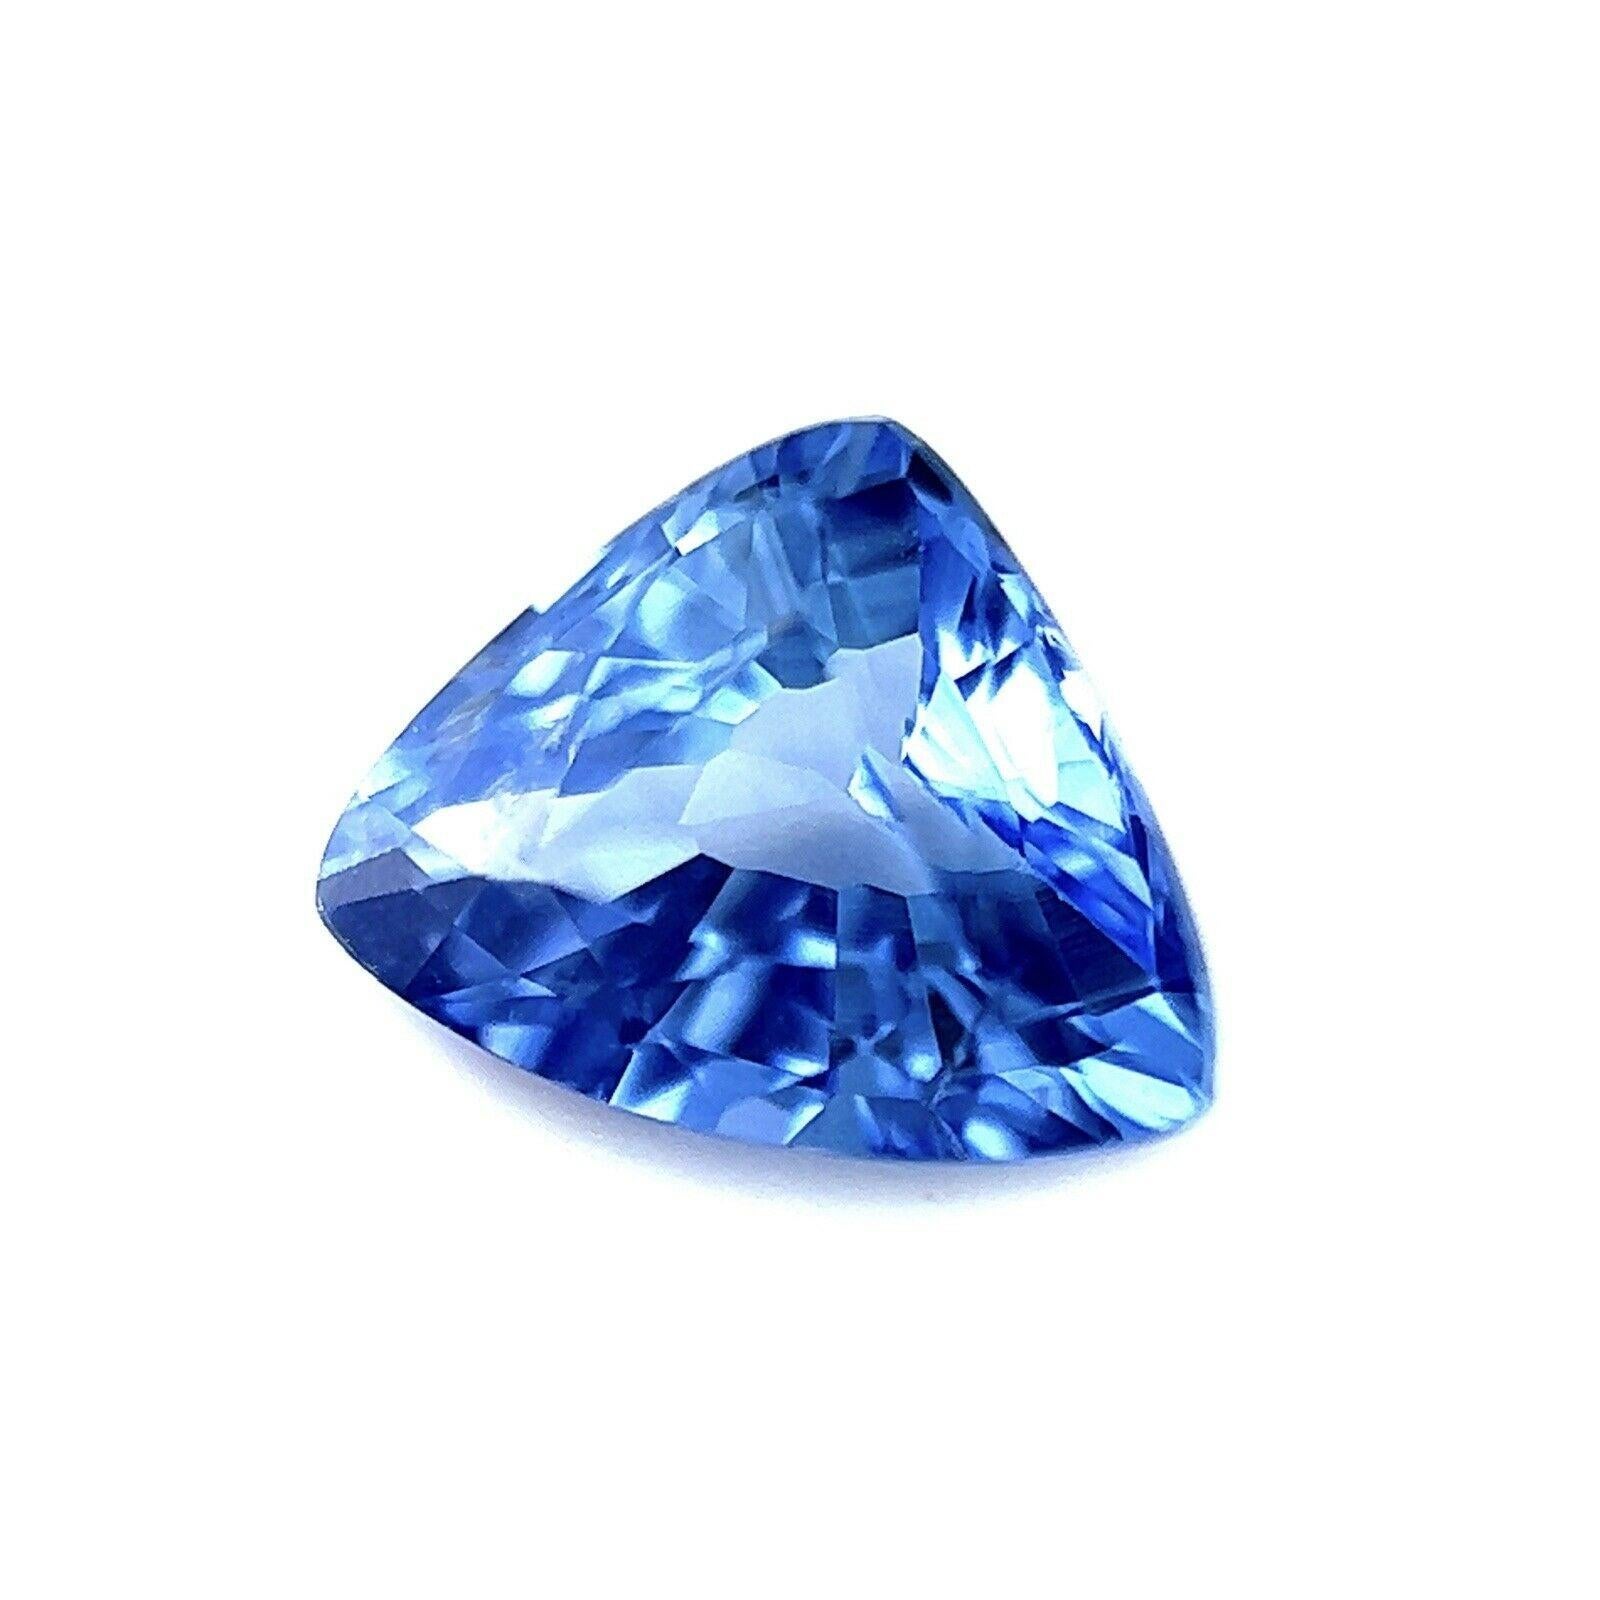 Lebendiger Ceylon Kornblumenblauer Saphir 0,79ct Trillion Dreiecksschliff Edelstein 6,4x5mm

Natürlicher Ceylon Conflower Blue Trillion Sapphire.
0.79 Karat mit einer schönen lebhaften kornblumenblauen Farbe und sehr guter Reinheit, ein sauberer